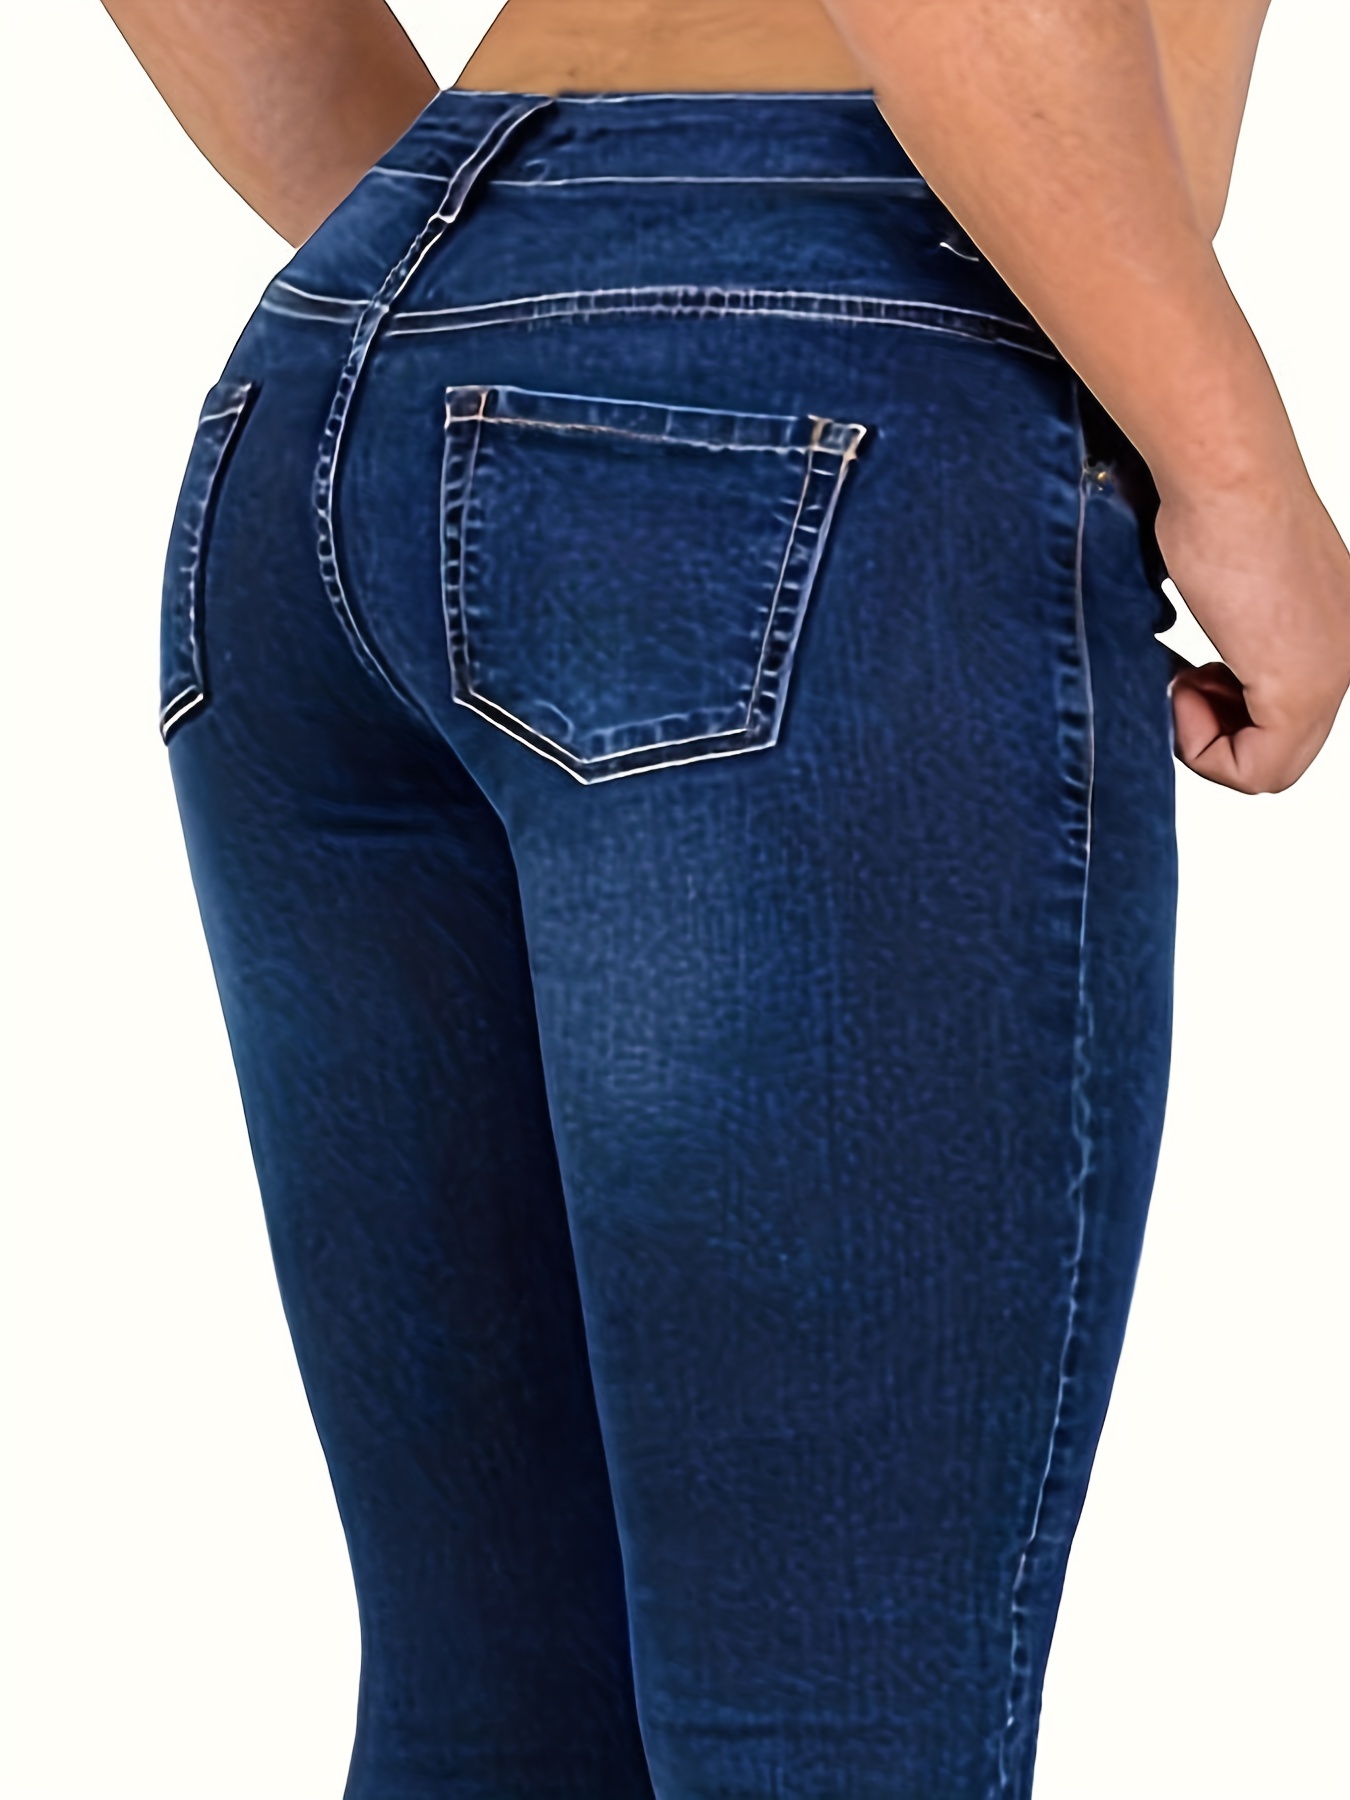 Blue Slim Fit Cropped Jeans, Slash Pockets Mid-Stretch Capris Denim Pants,  Women's Denim Jeans & Clothing